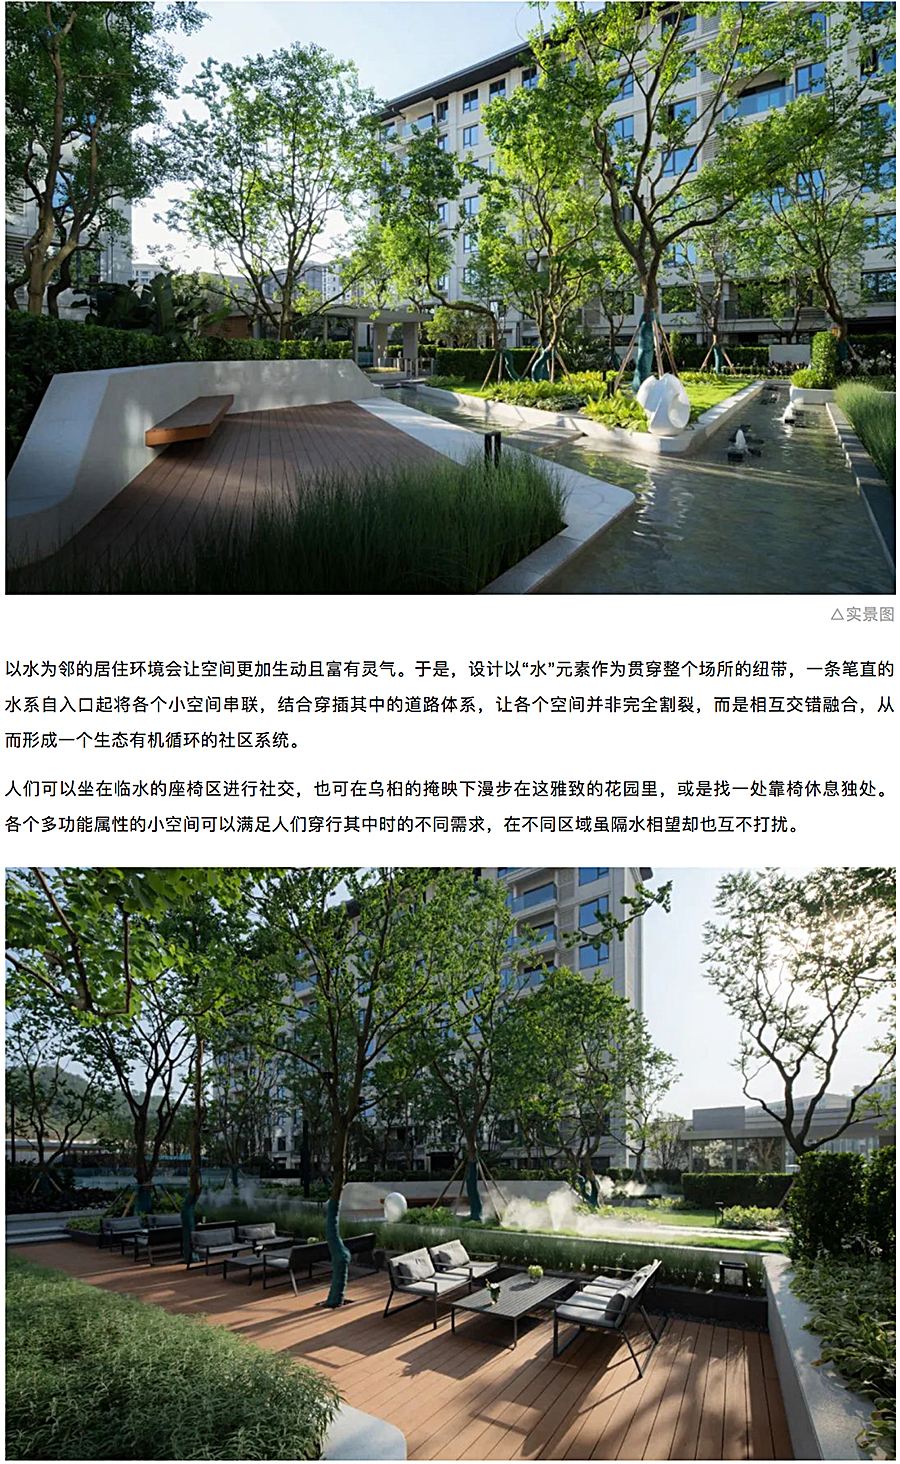 创新洋房社区-引领当代生活-_-重庆东原·月印万川_0012_图层-13.jpg